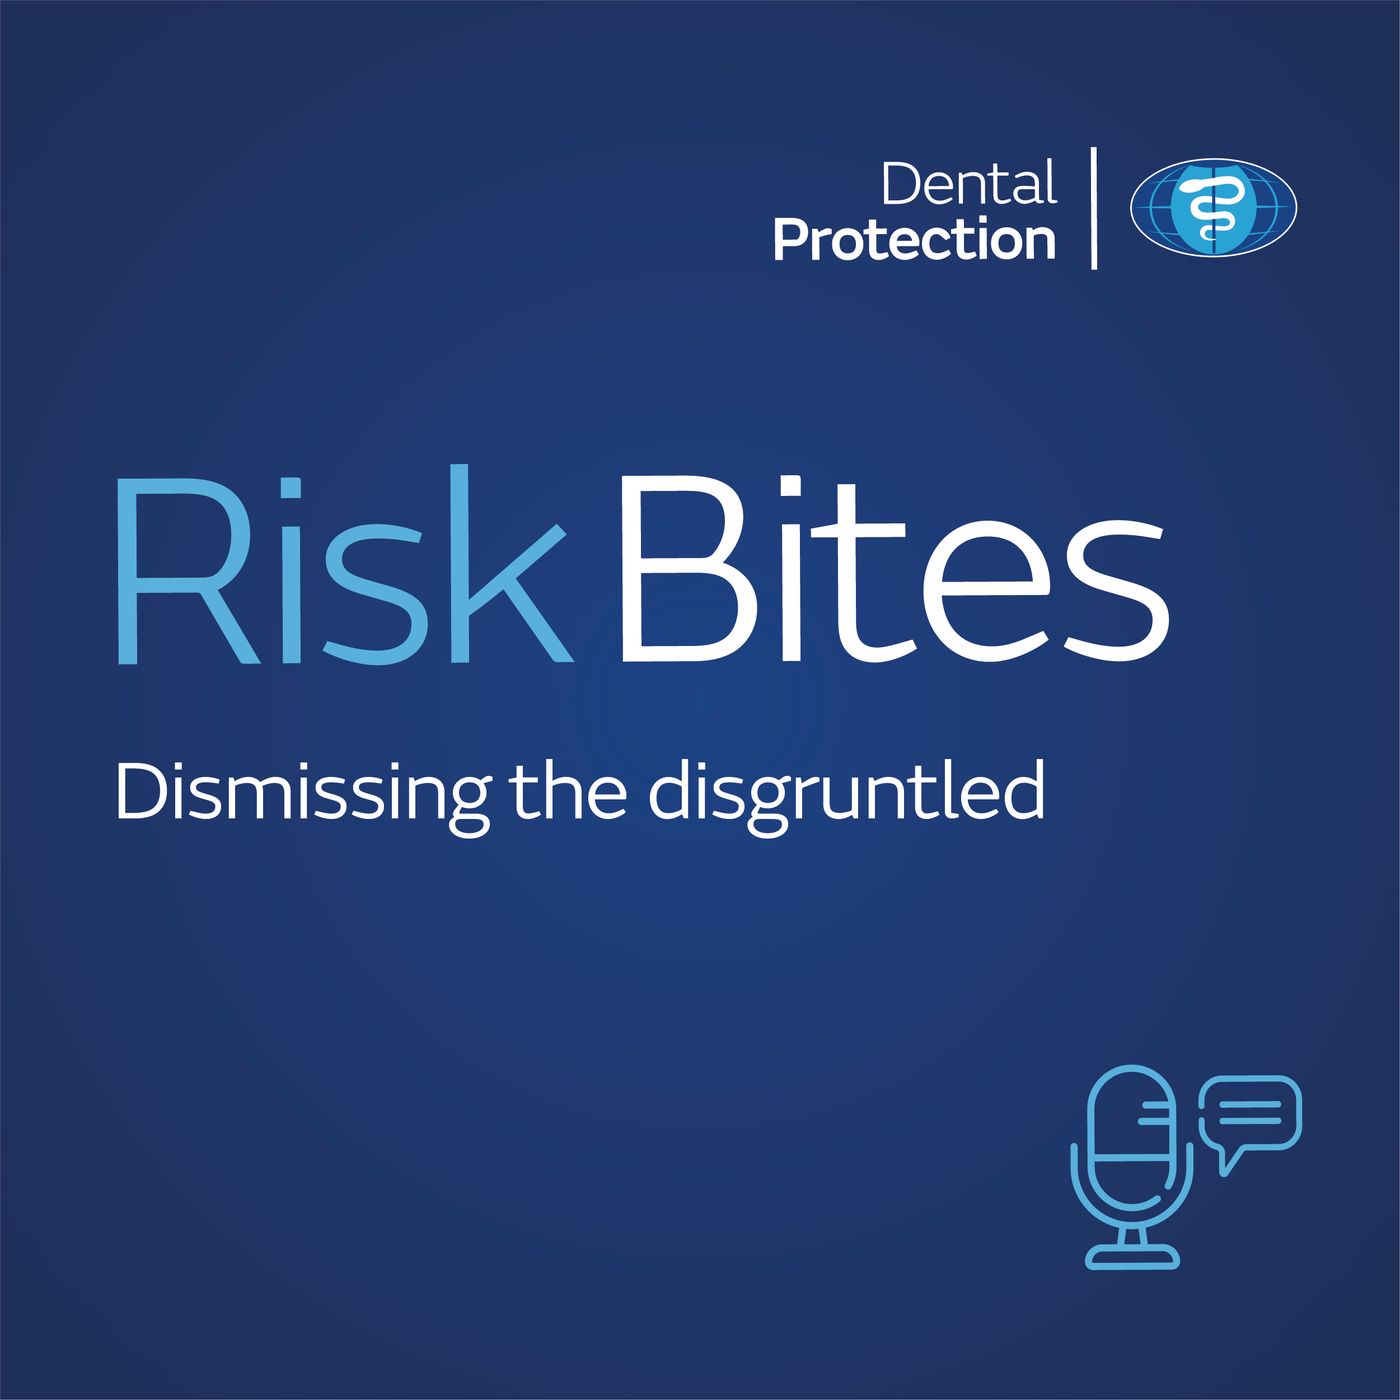 RiskBites: Dismissing the disgruntled